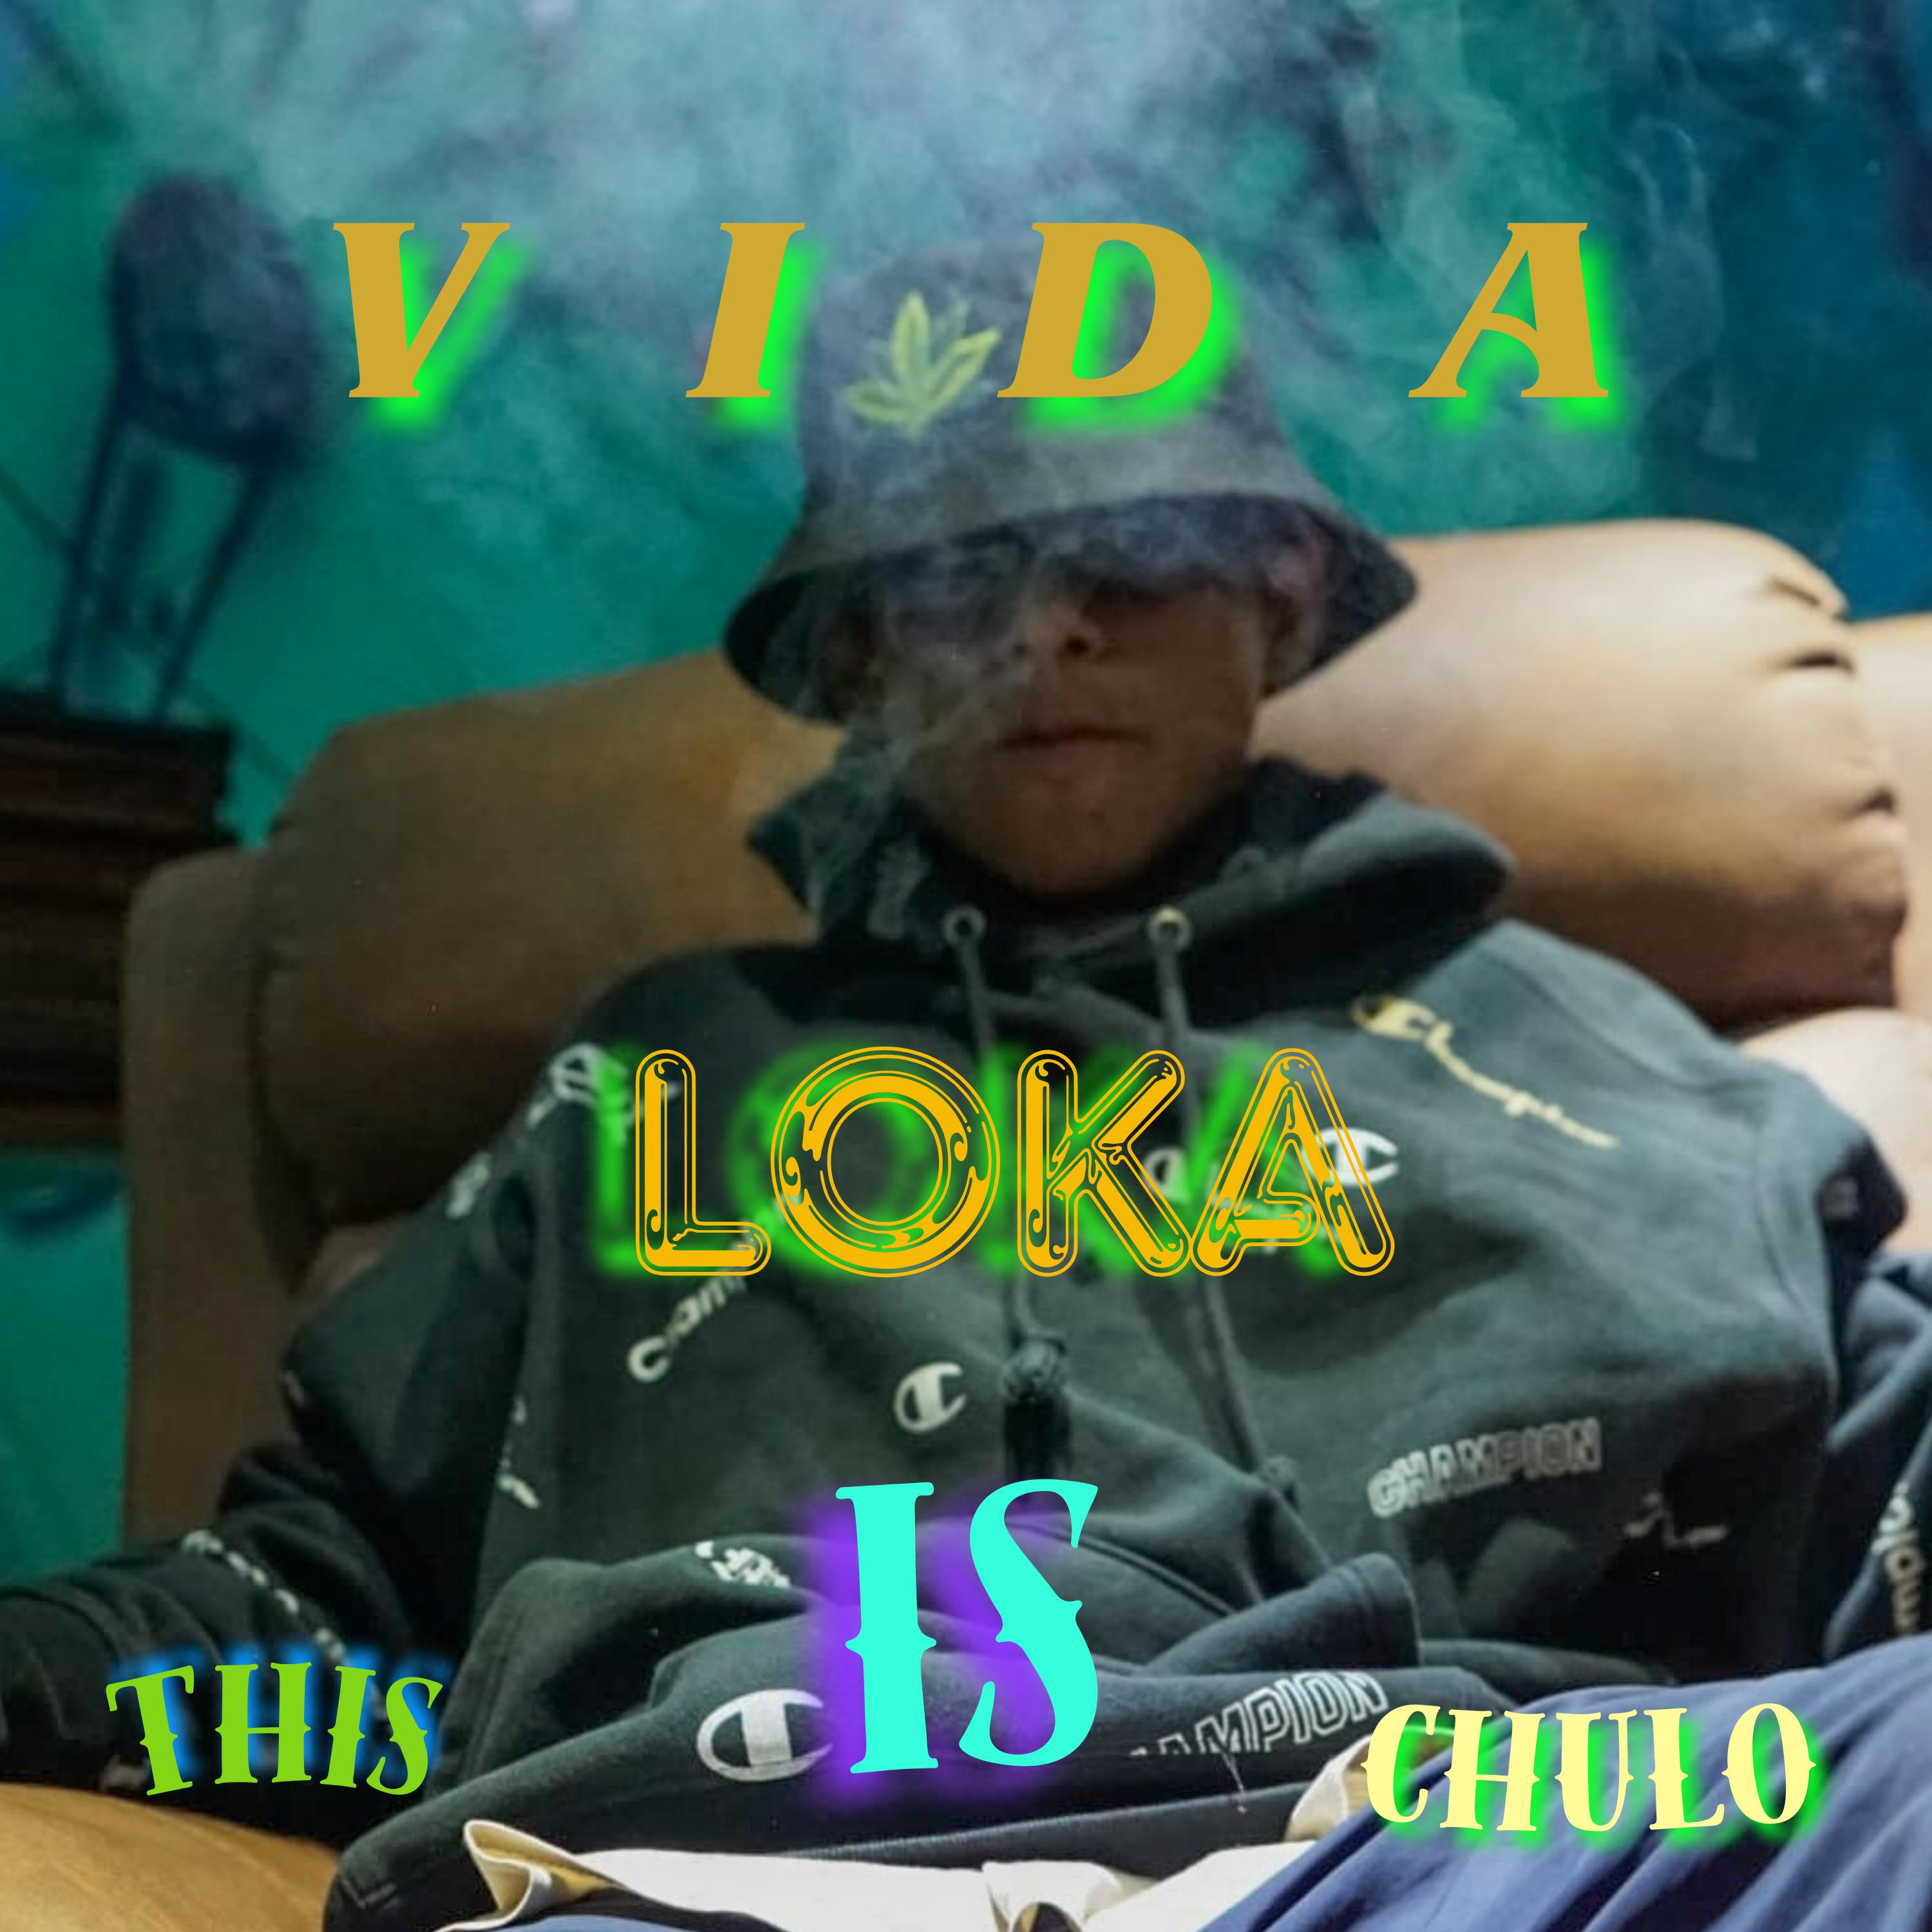 Постер альбома Vida Loka